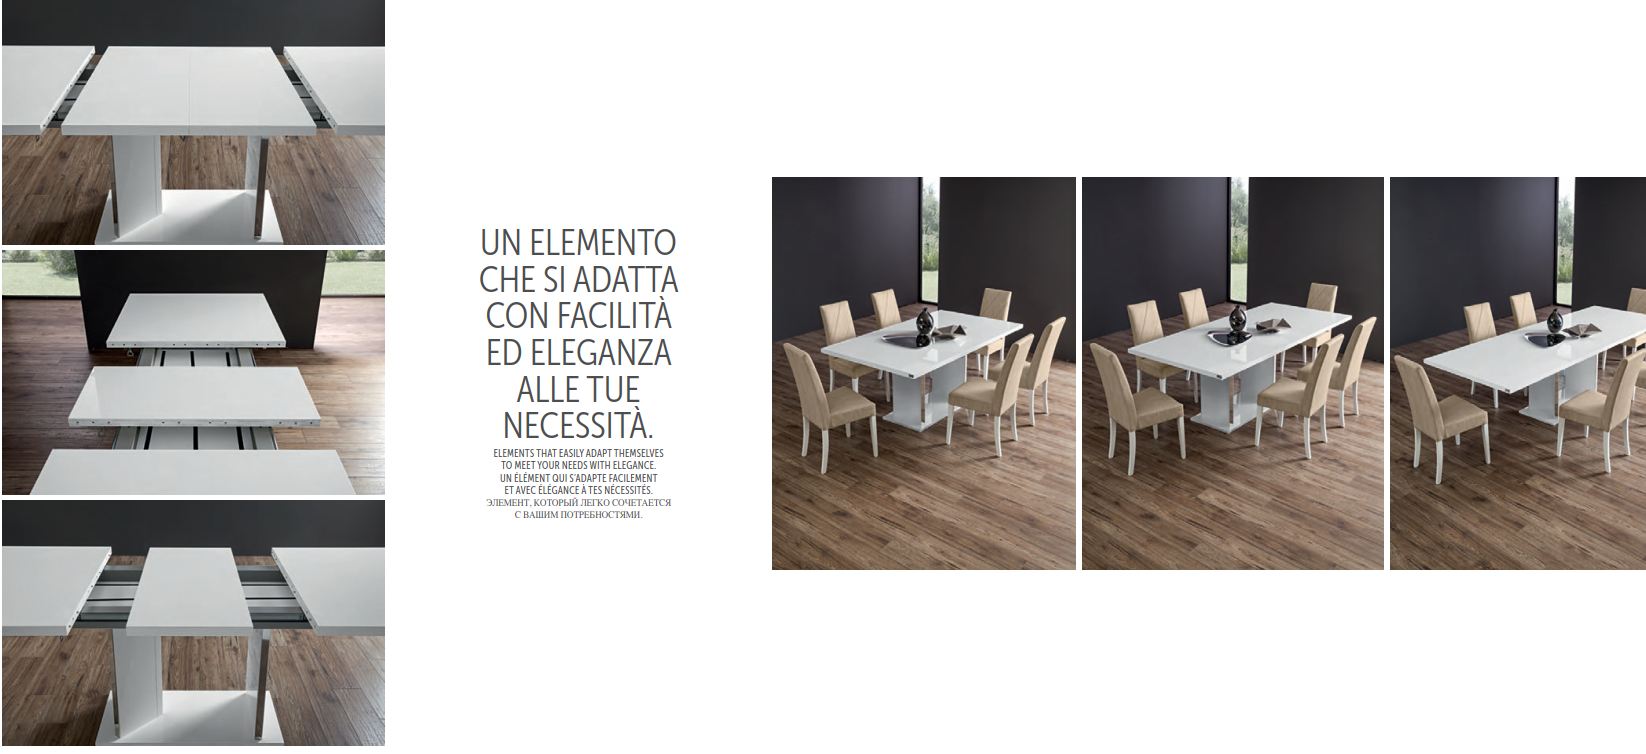 Итальянская гостиная Lisa (комод + зеркало + витрина + стол на 180 + 4 стула) фабрики STATUS_168035